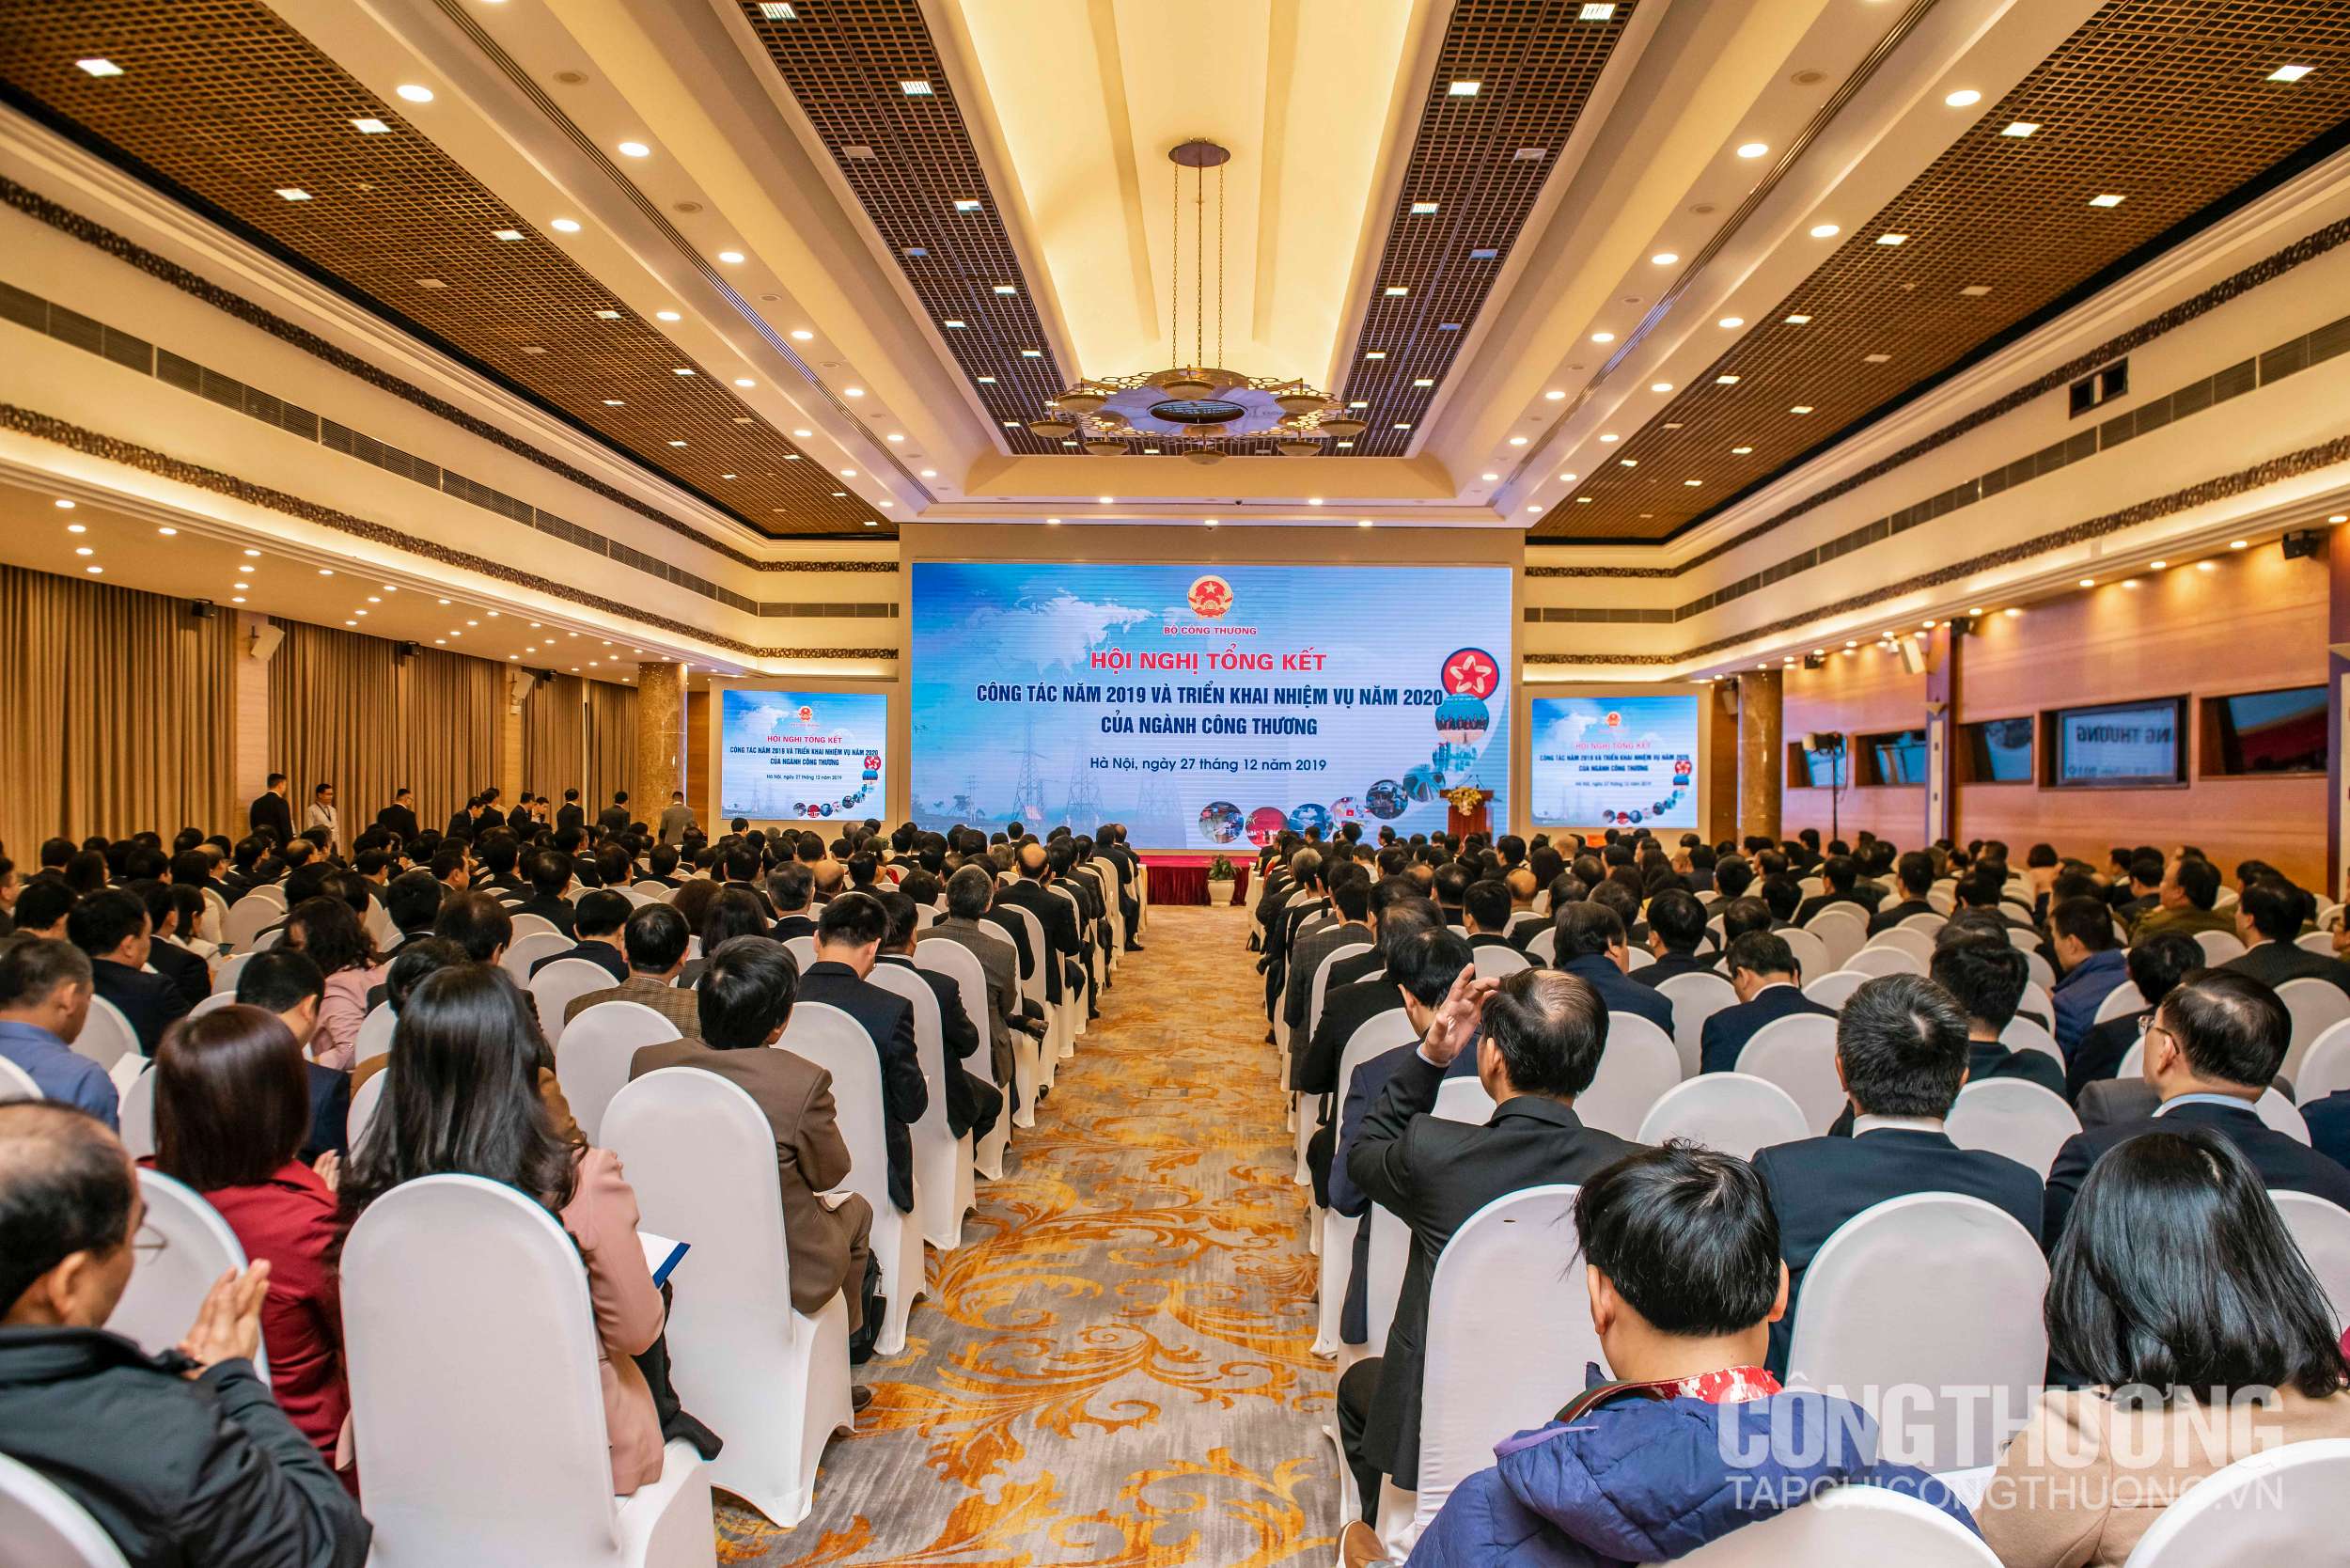 Hội nghị tổng kết công tác năm 2019 và triển khai nhiệm vụ năm 2020 của ngành Công Thương